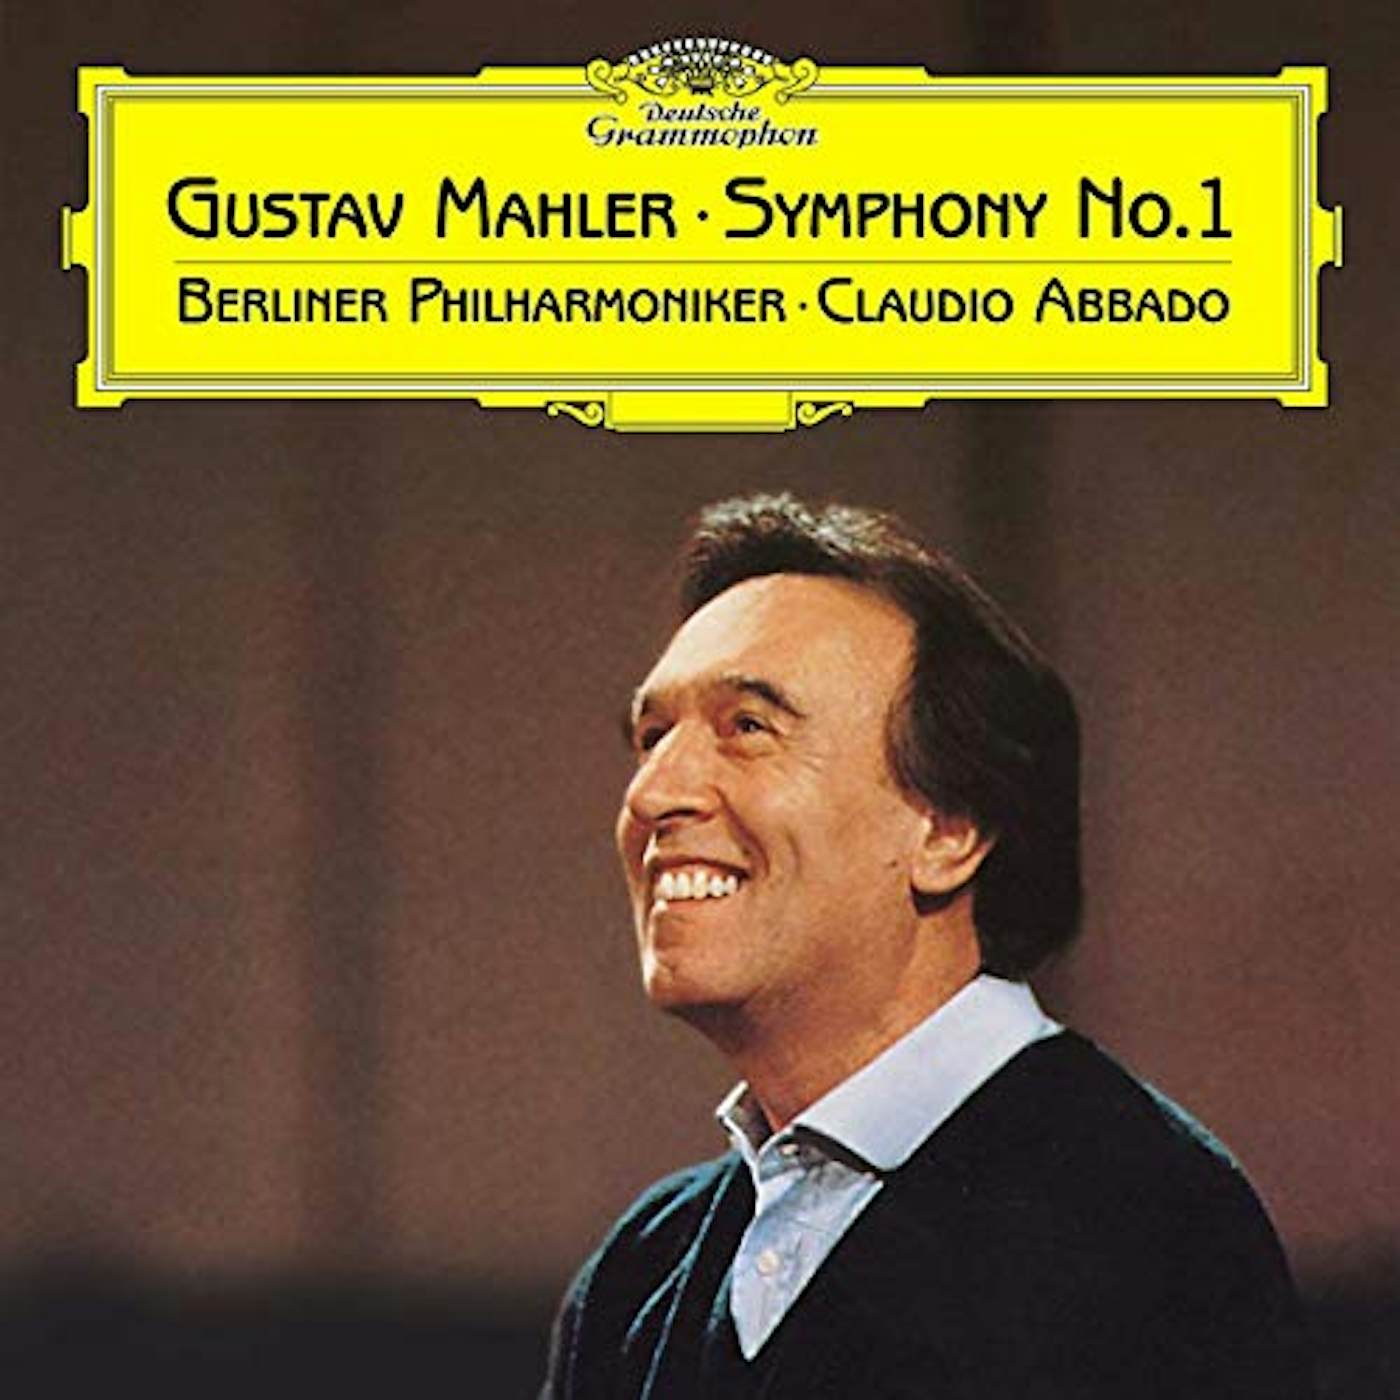 Gustav Mahler SYMPHONY NO 1 Vinyl Record